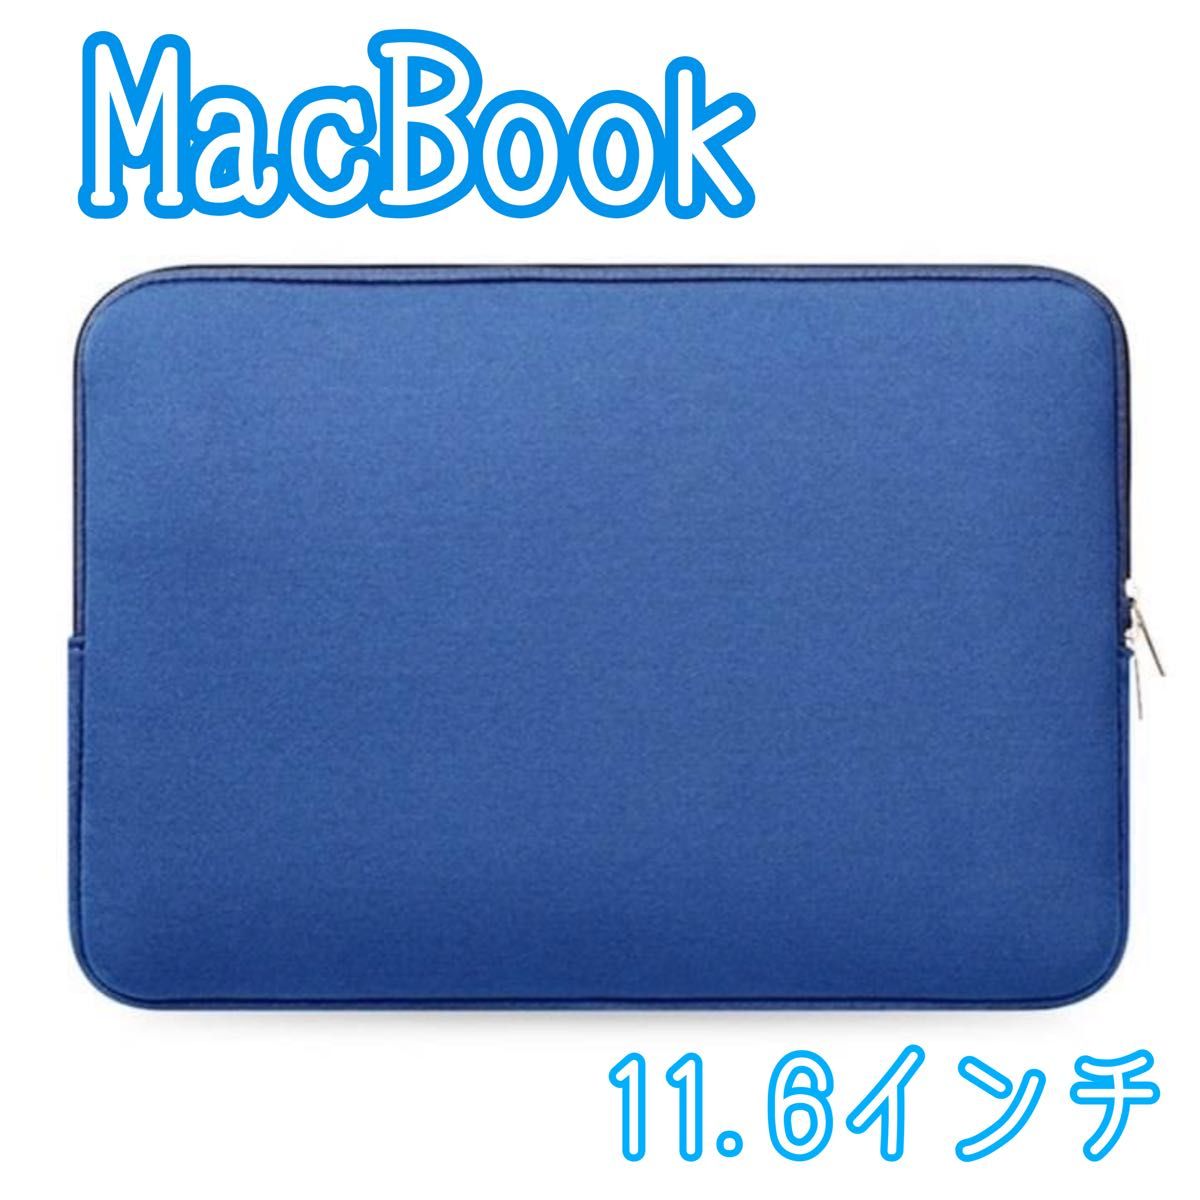 【ブルー】11.6インチ 防水 macbook ケース パソコンケース スリム 軽量 コンパクト シンプル お洒落 収納 青